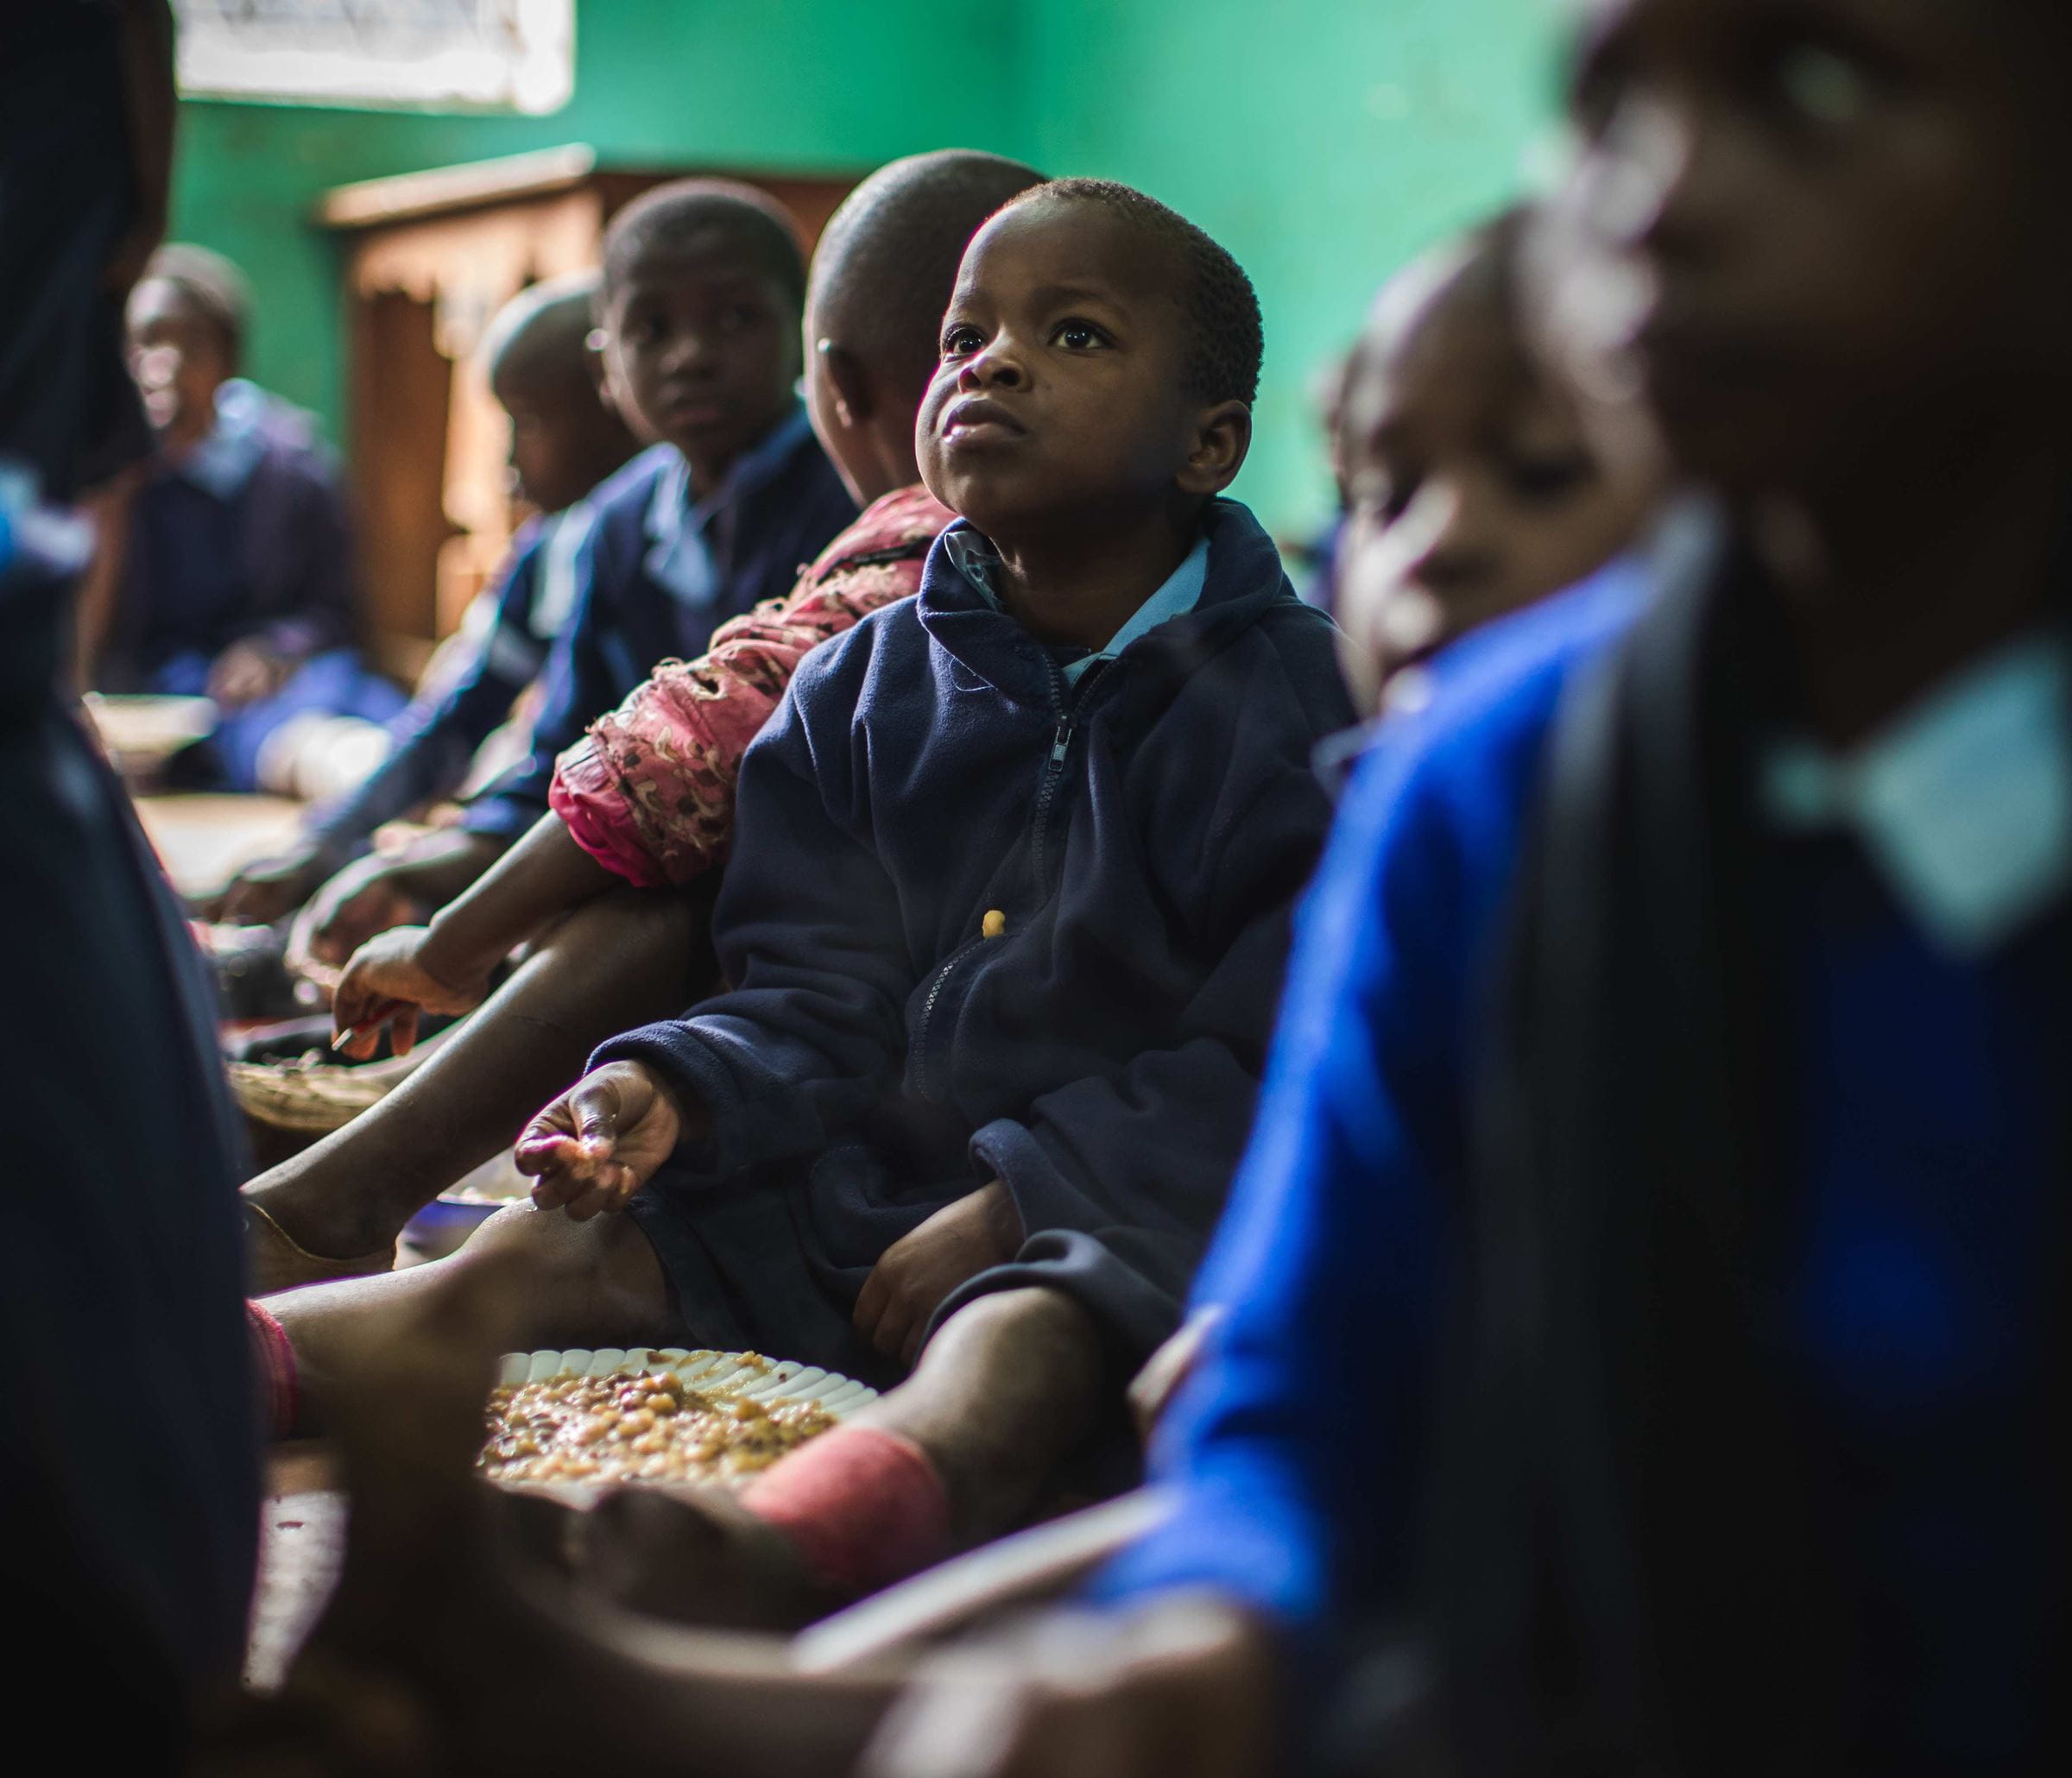 Kenianische Kinder beim Mittagessen (Quelle: Lars Heidrich)